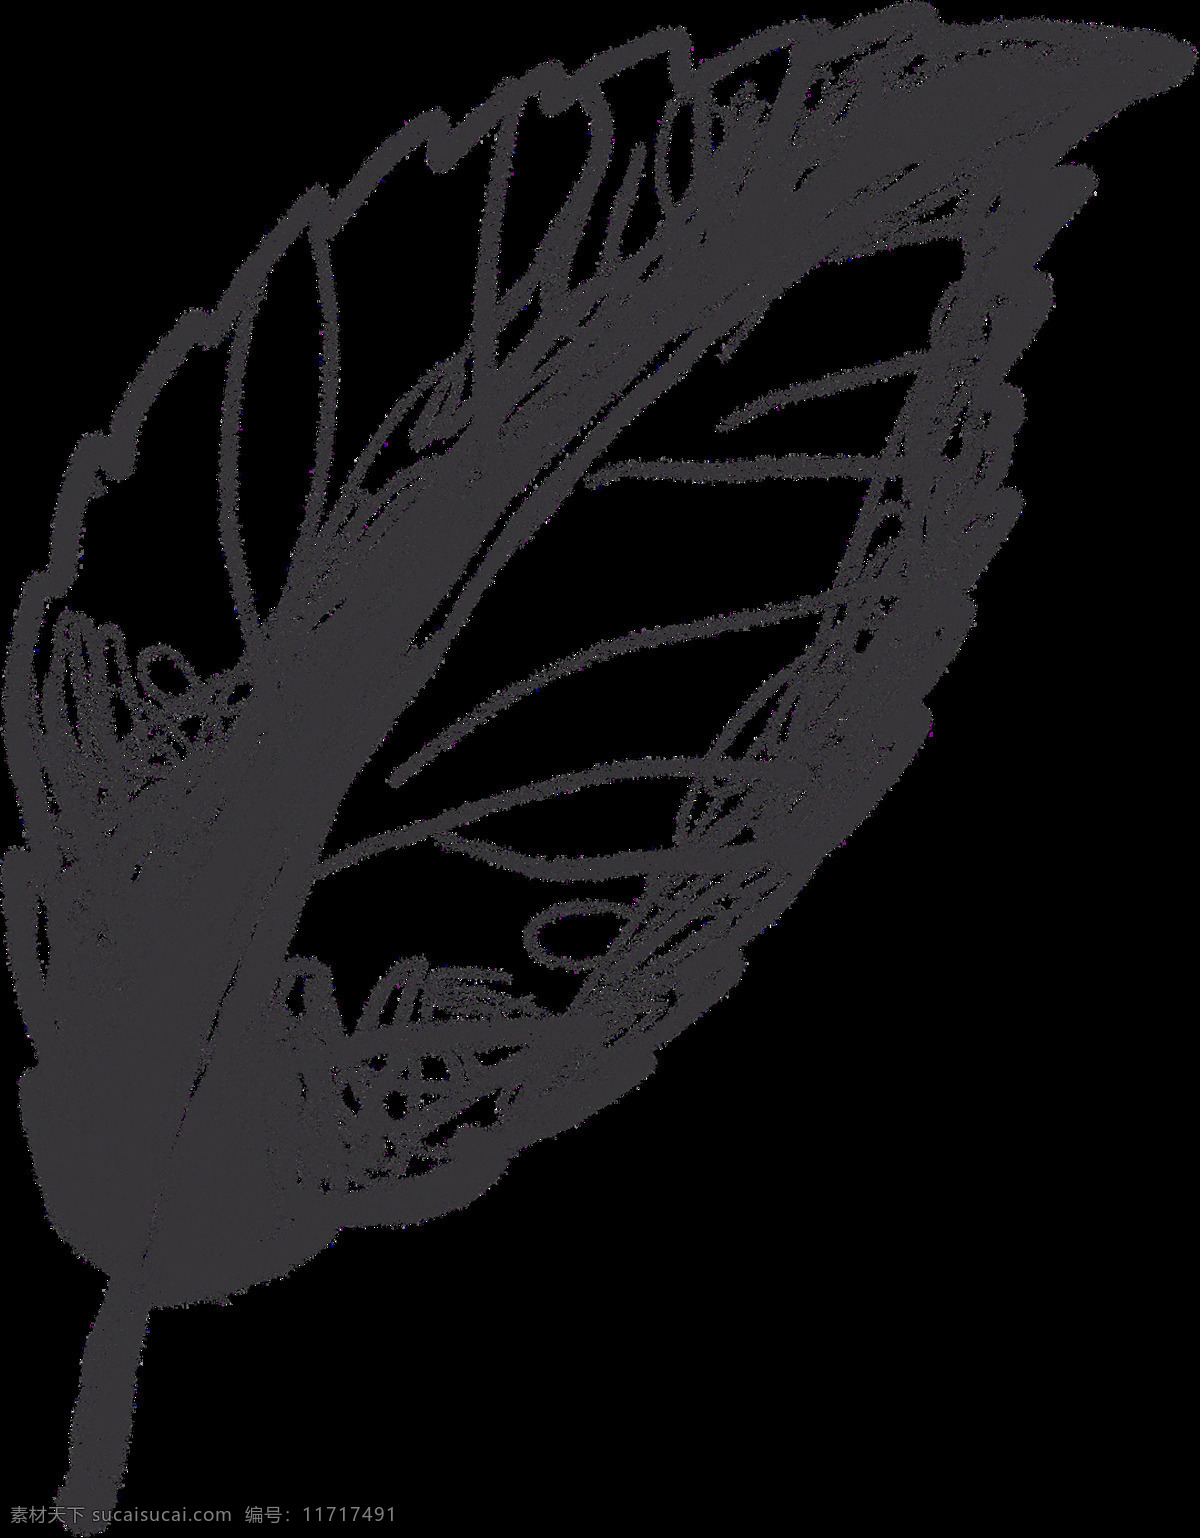 玫瑰花 素 叶片 描绘 画 绘画 速写 素描 黑白 创意 精美 植物 花瓣 花朵 背景图案 树枝 花骨朵 文化艺术 绘画书法